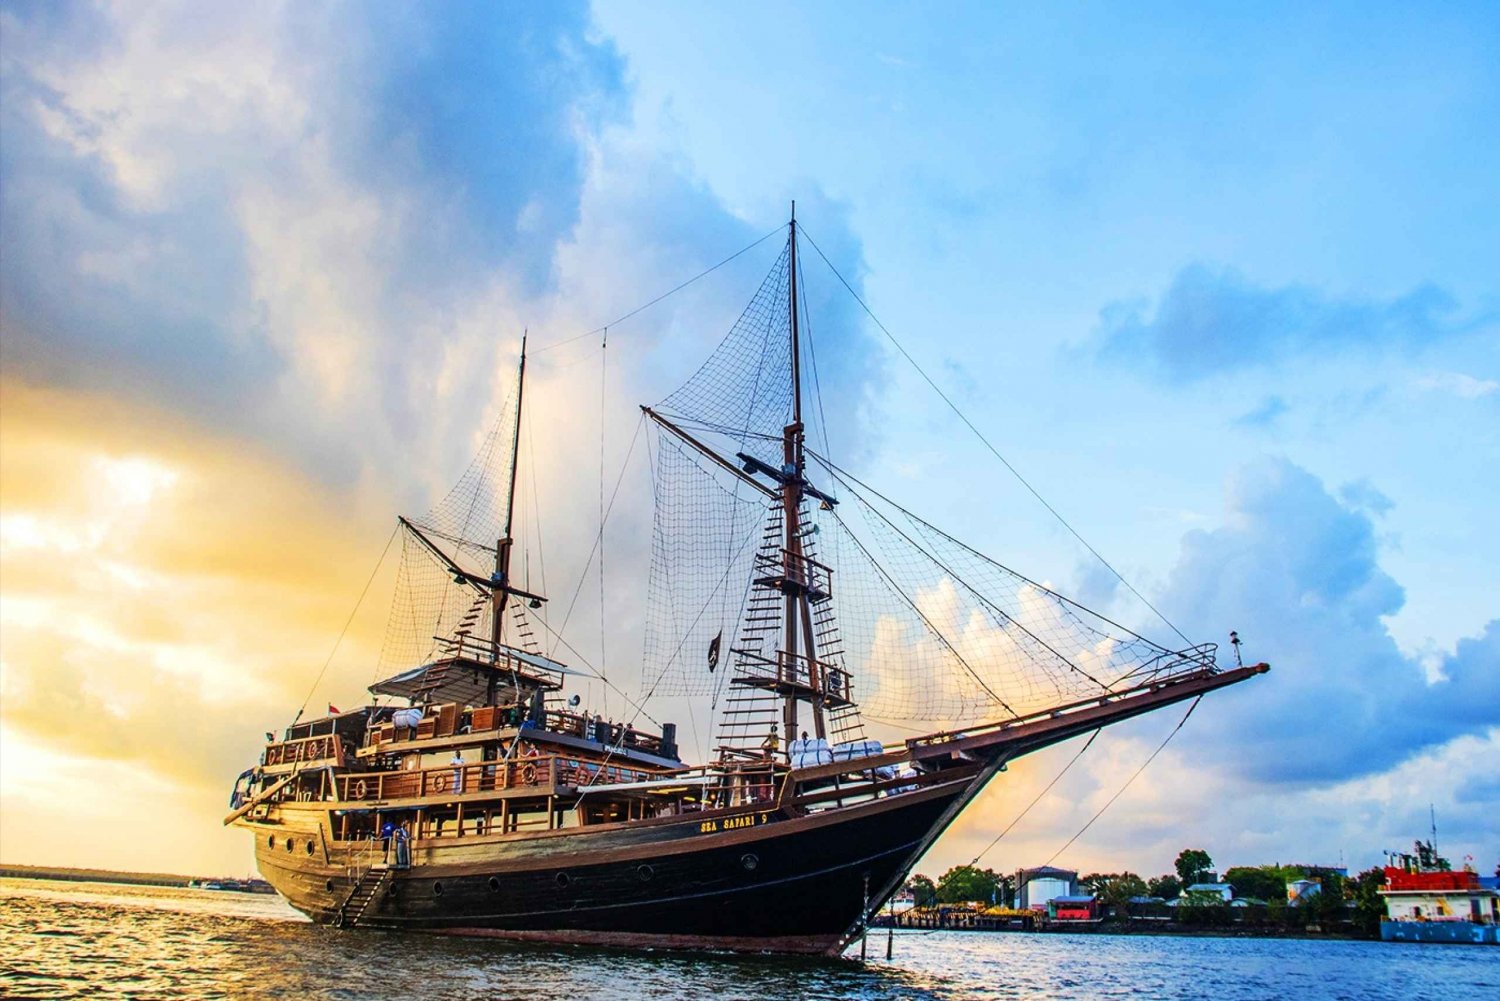 Bali: Piraten Dinner Cruise met shows, spelletjes en muziek